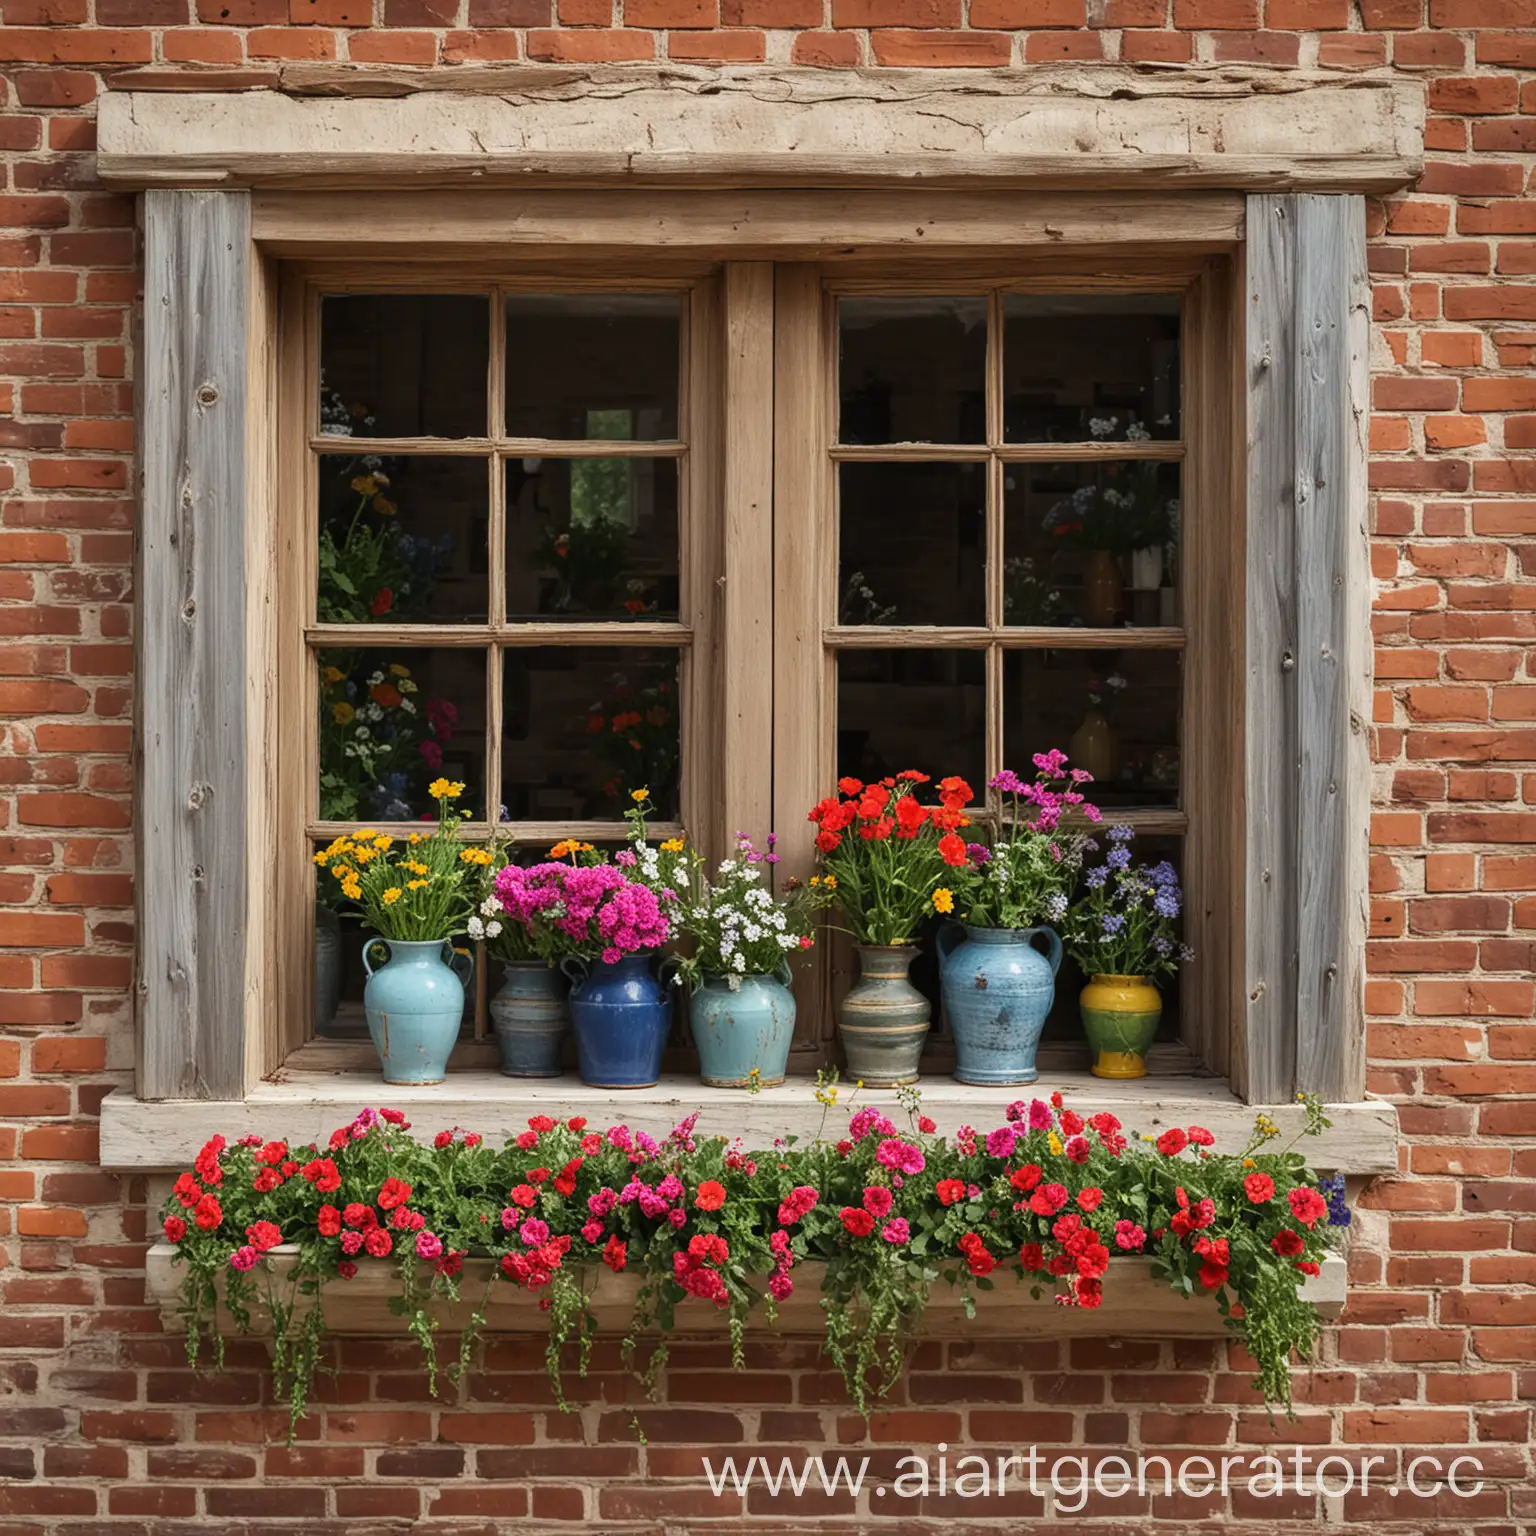 Vintage-Window-Display-with-Floral-Vases-against-Brick-Wall